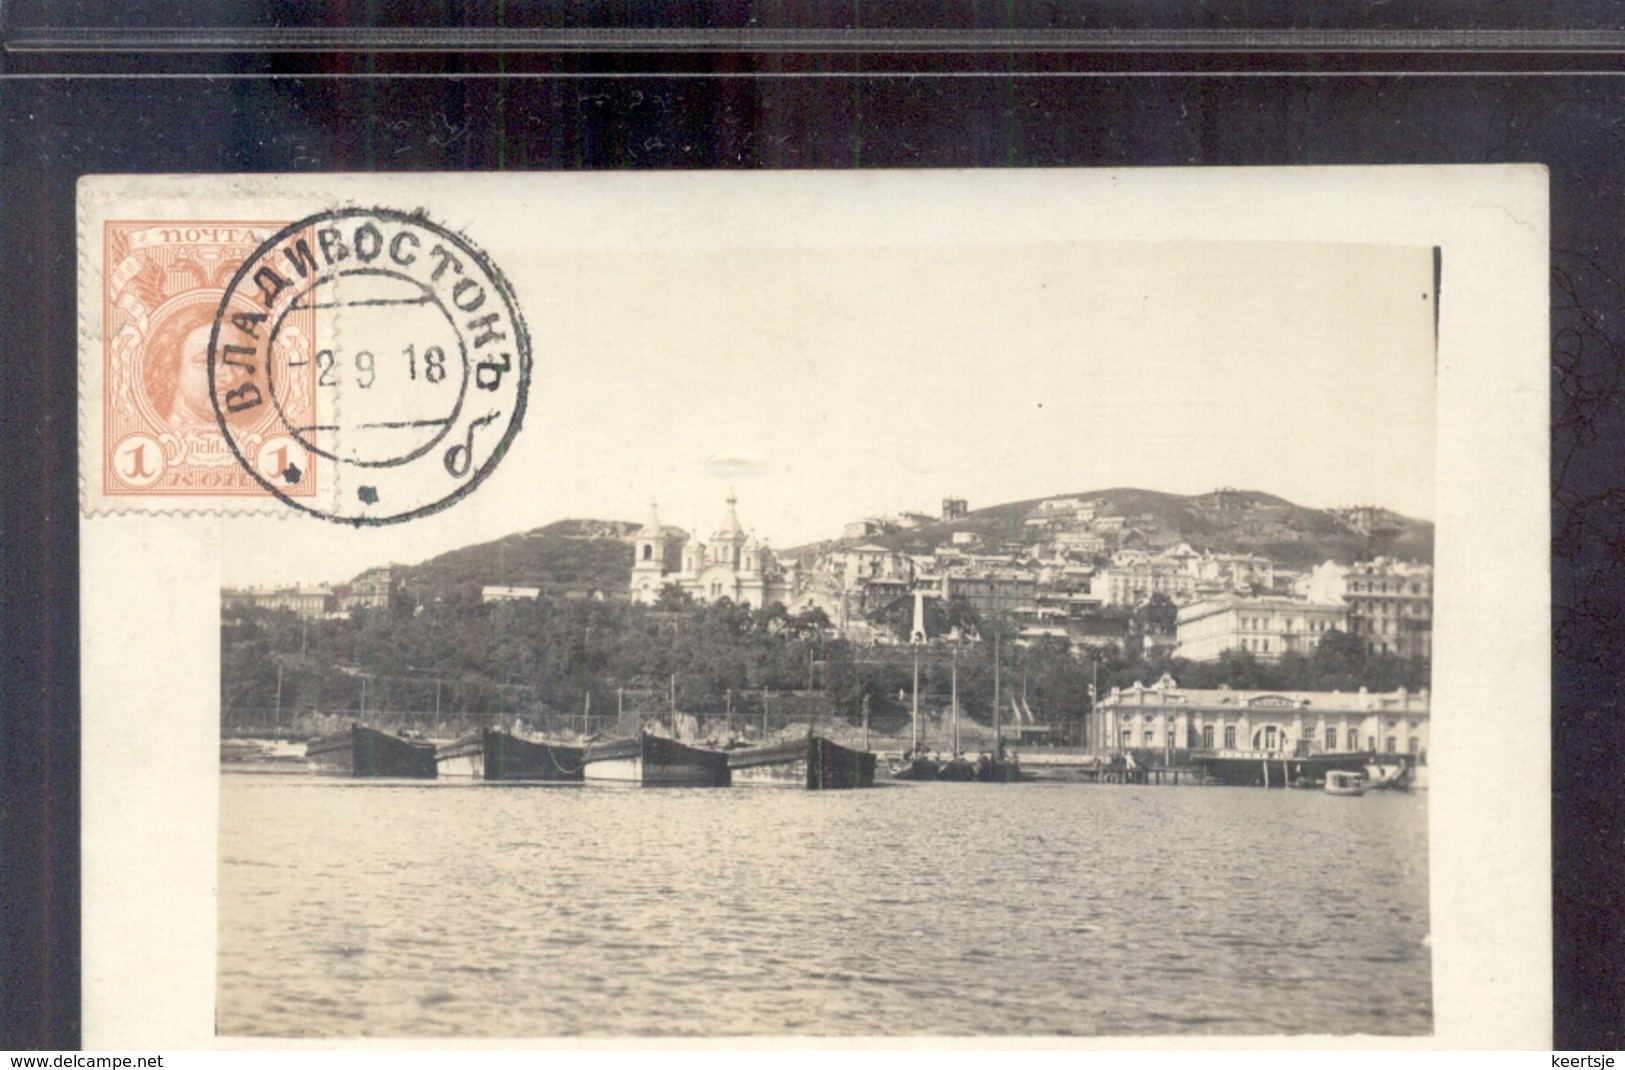 Rusland Russia - Vladivostok - Schip Boot - Fotokaart Photocard - 1918 - Russie